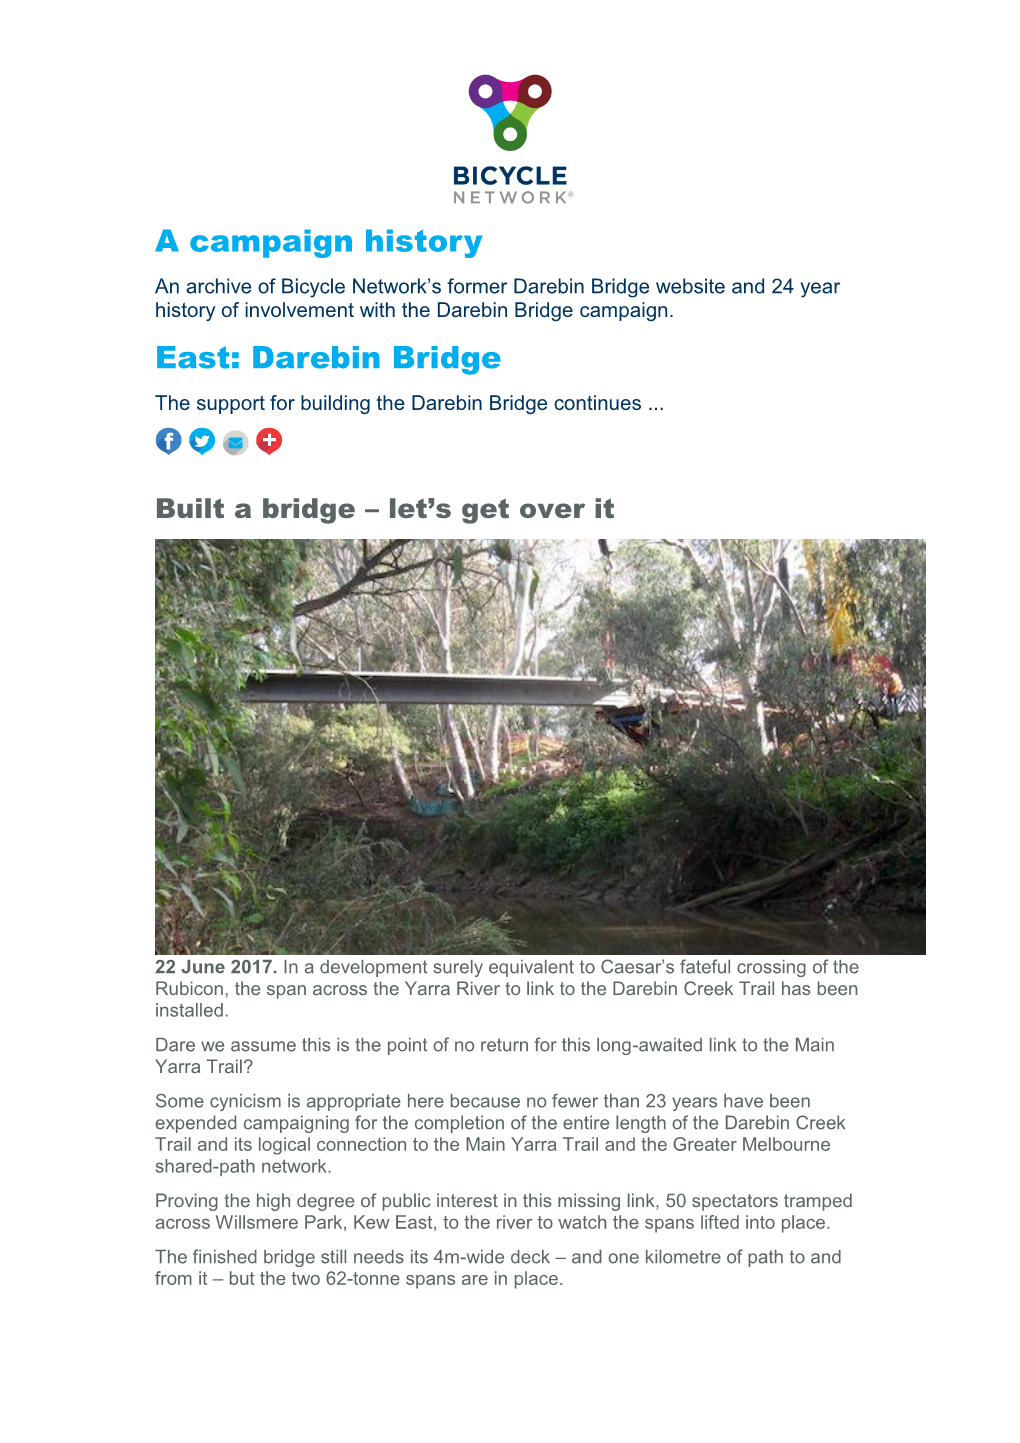 Darebin Bridge Website and 24 Year History of Involvement with the Darebin Bridge Campaign